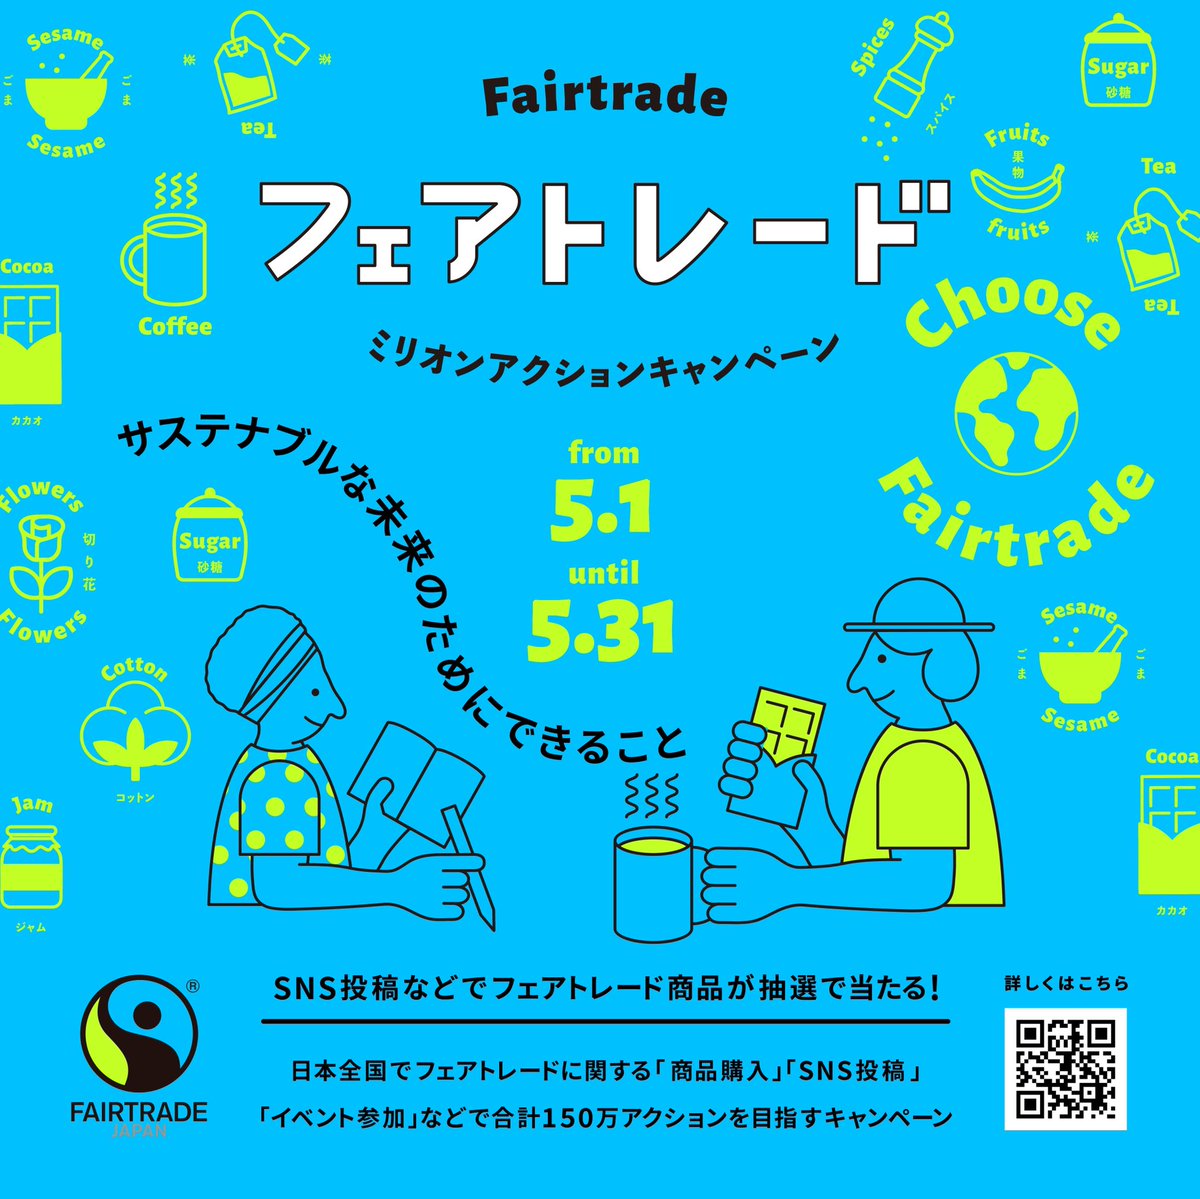 【シェア拡散のお願い】
5月の第2土曜日(今年は14日）は「世界フェアトレード・デー」、そして5月は「フェアトレード月間」です。
フェアトレード関連アクション数の目標を目指すキャンペーンが、いよいよ本日5月1日からスタート！
#FairtradeAction2022